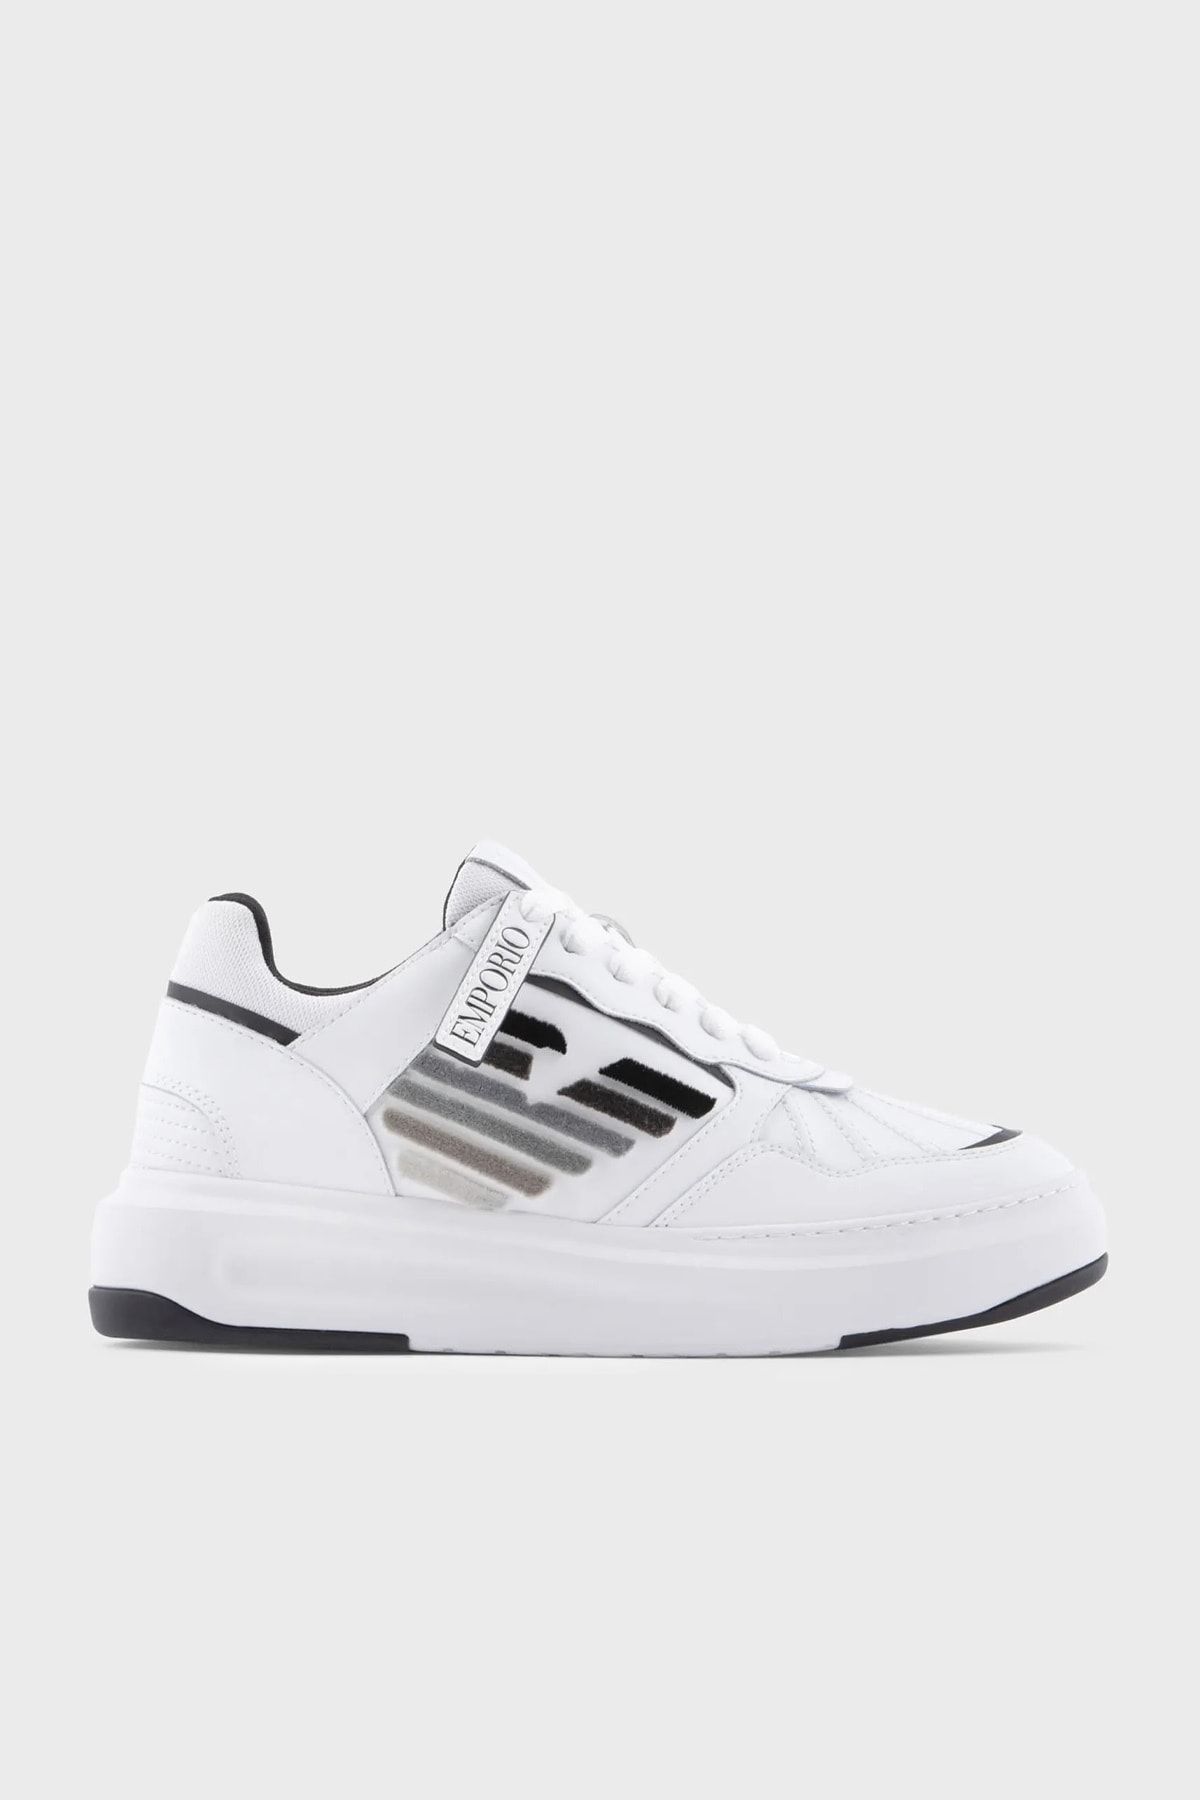 Emporio Armani Logolu Deri Sneaker Ayakkabı X3x165 Xn703 D611